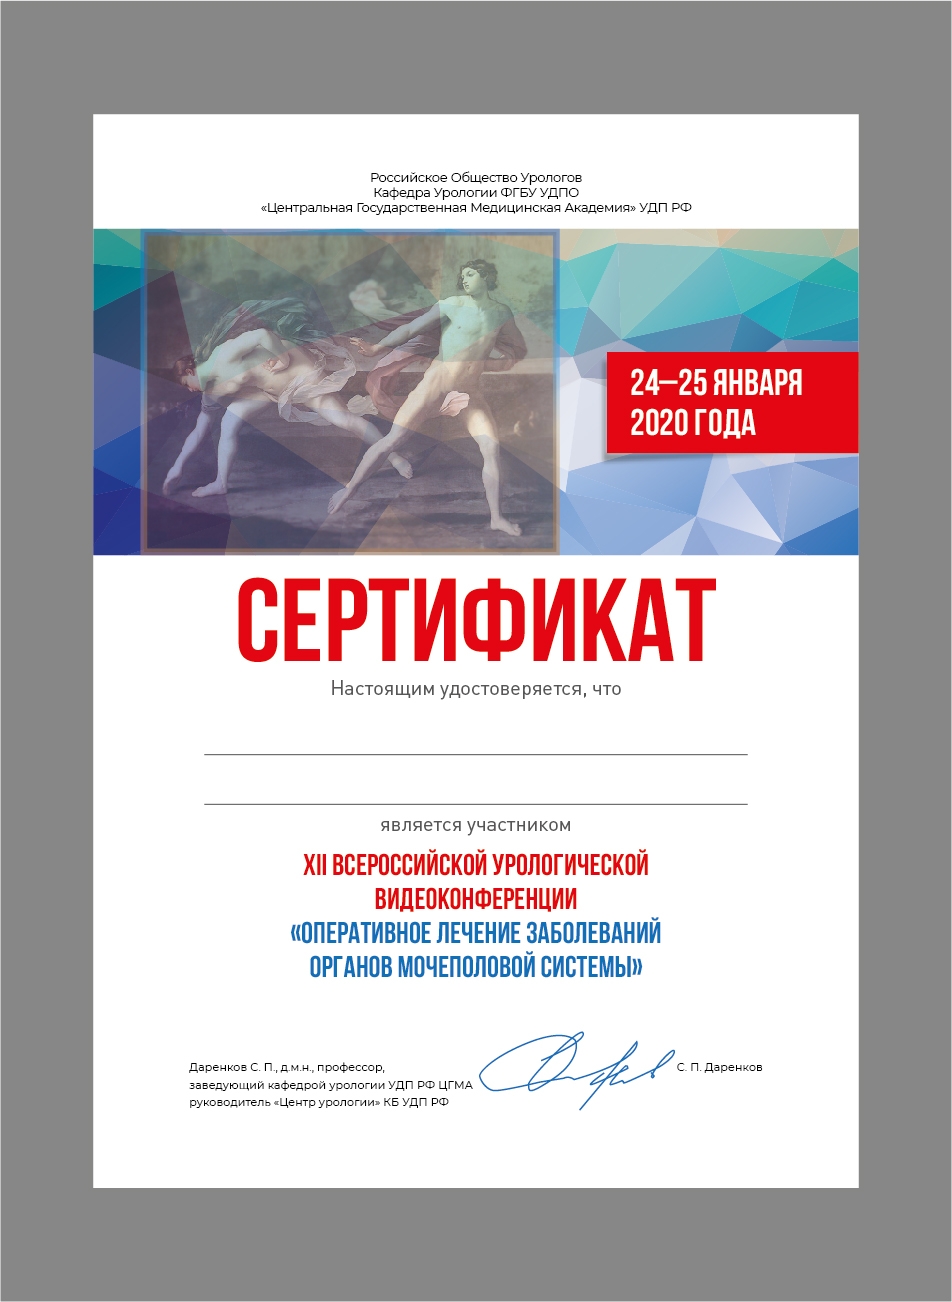 Сертификат участника XII Всероссийской урологической видеоконференции